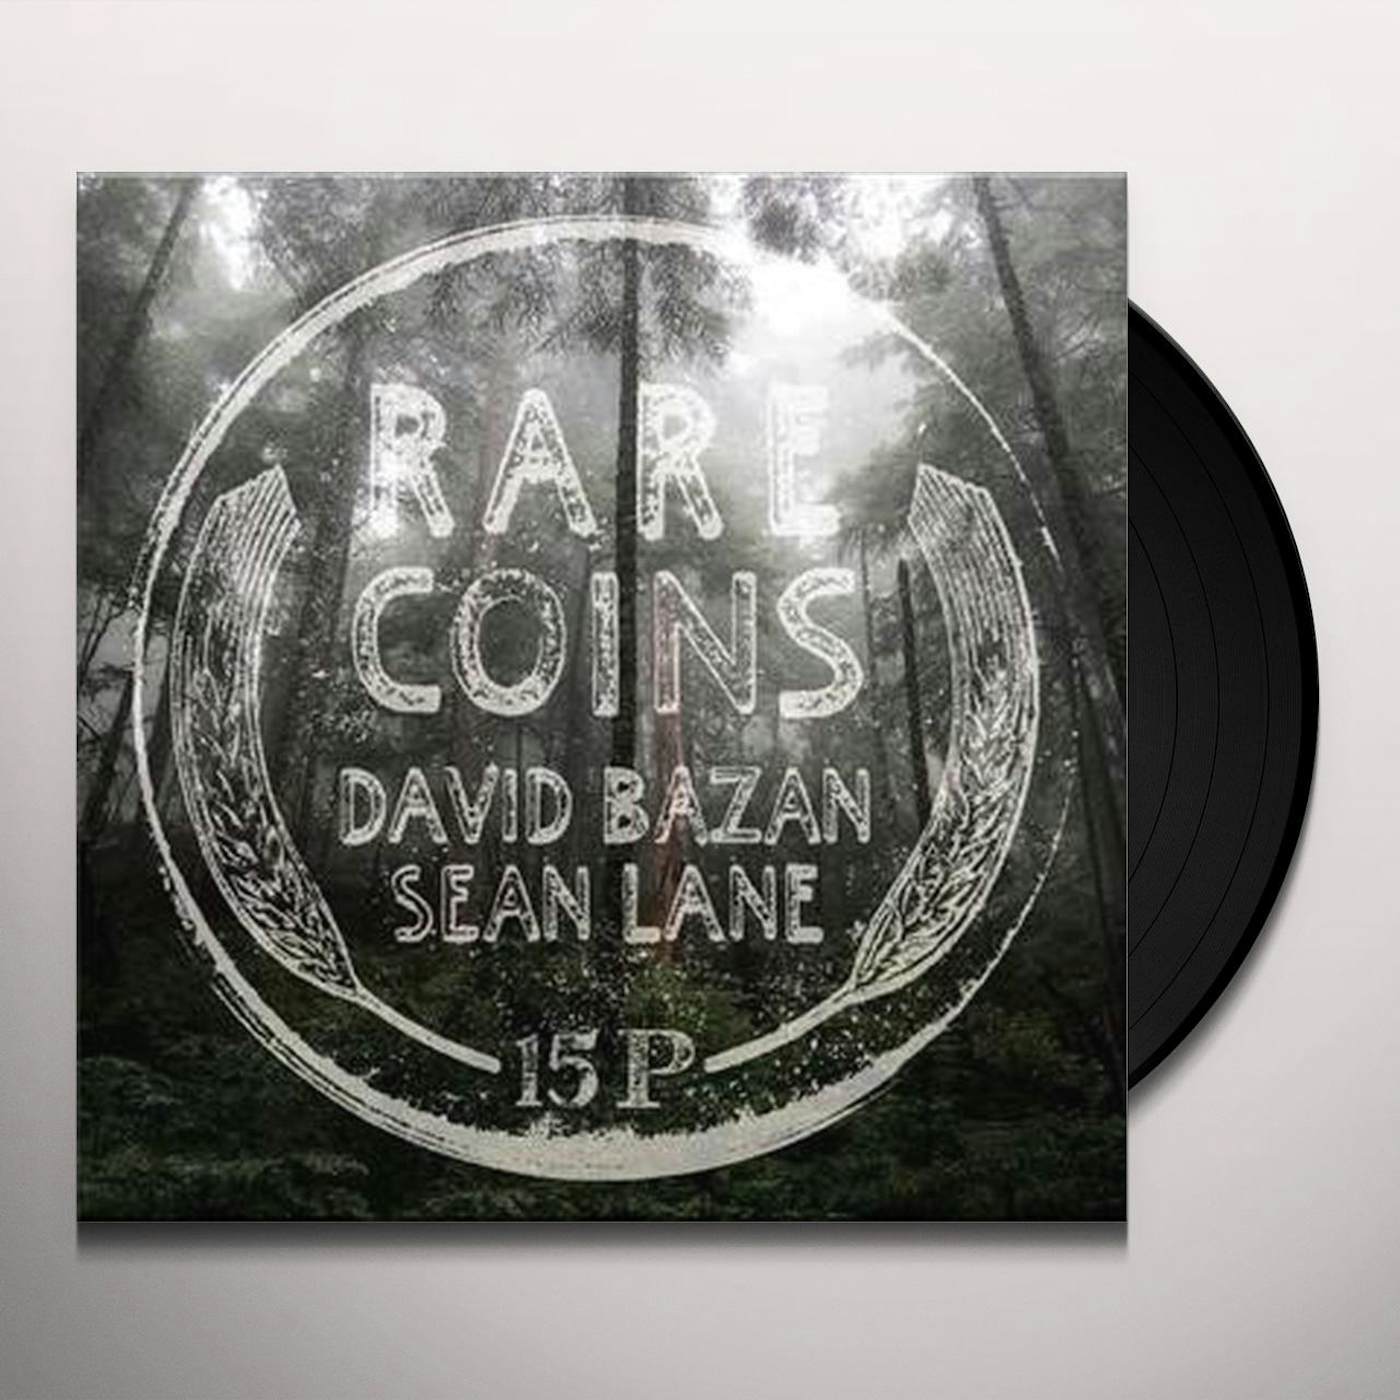 Rare Coins: David Bazan & Sean Lane Vinyl Record